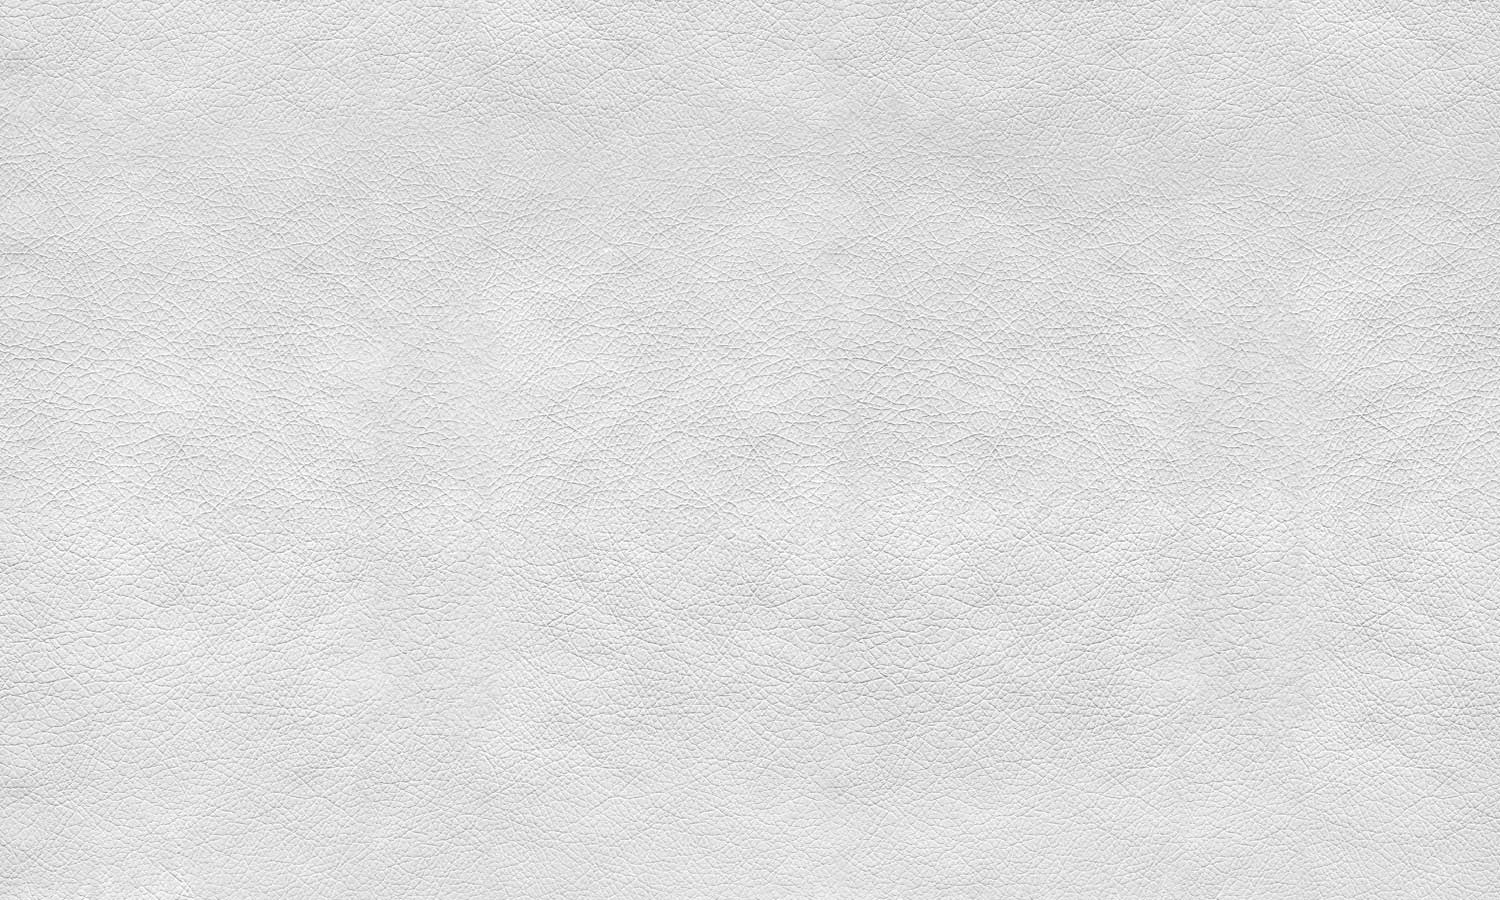 Samoljepljiva folija za namještaj - Bijela koža  PAT097